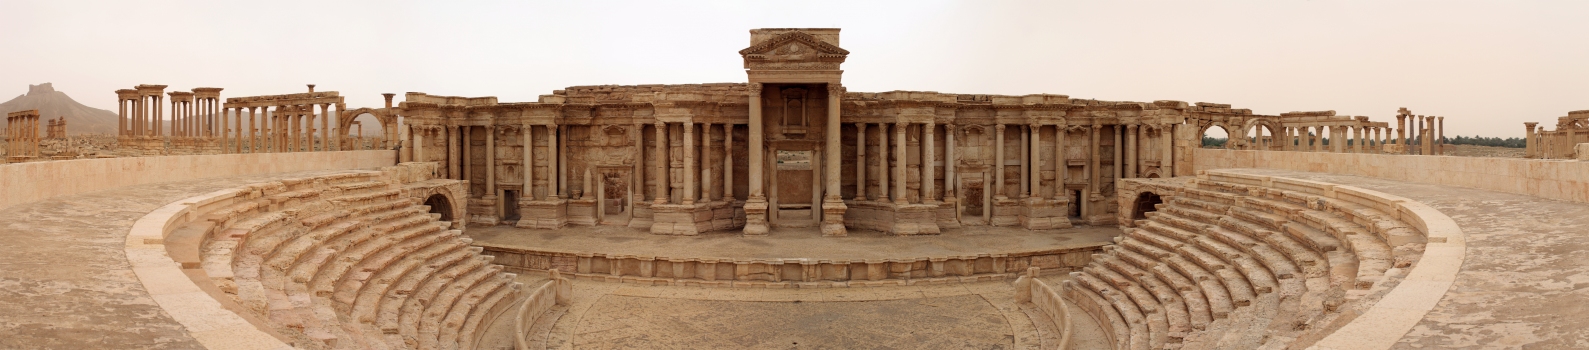 Römisches Theater von Palmyra